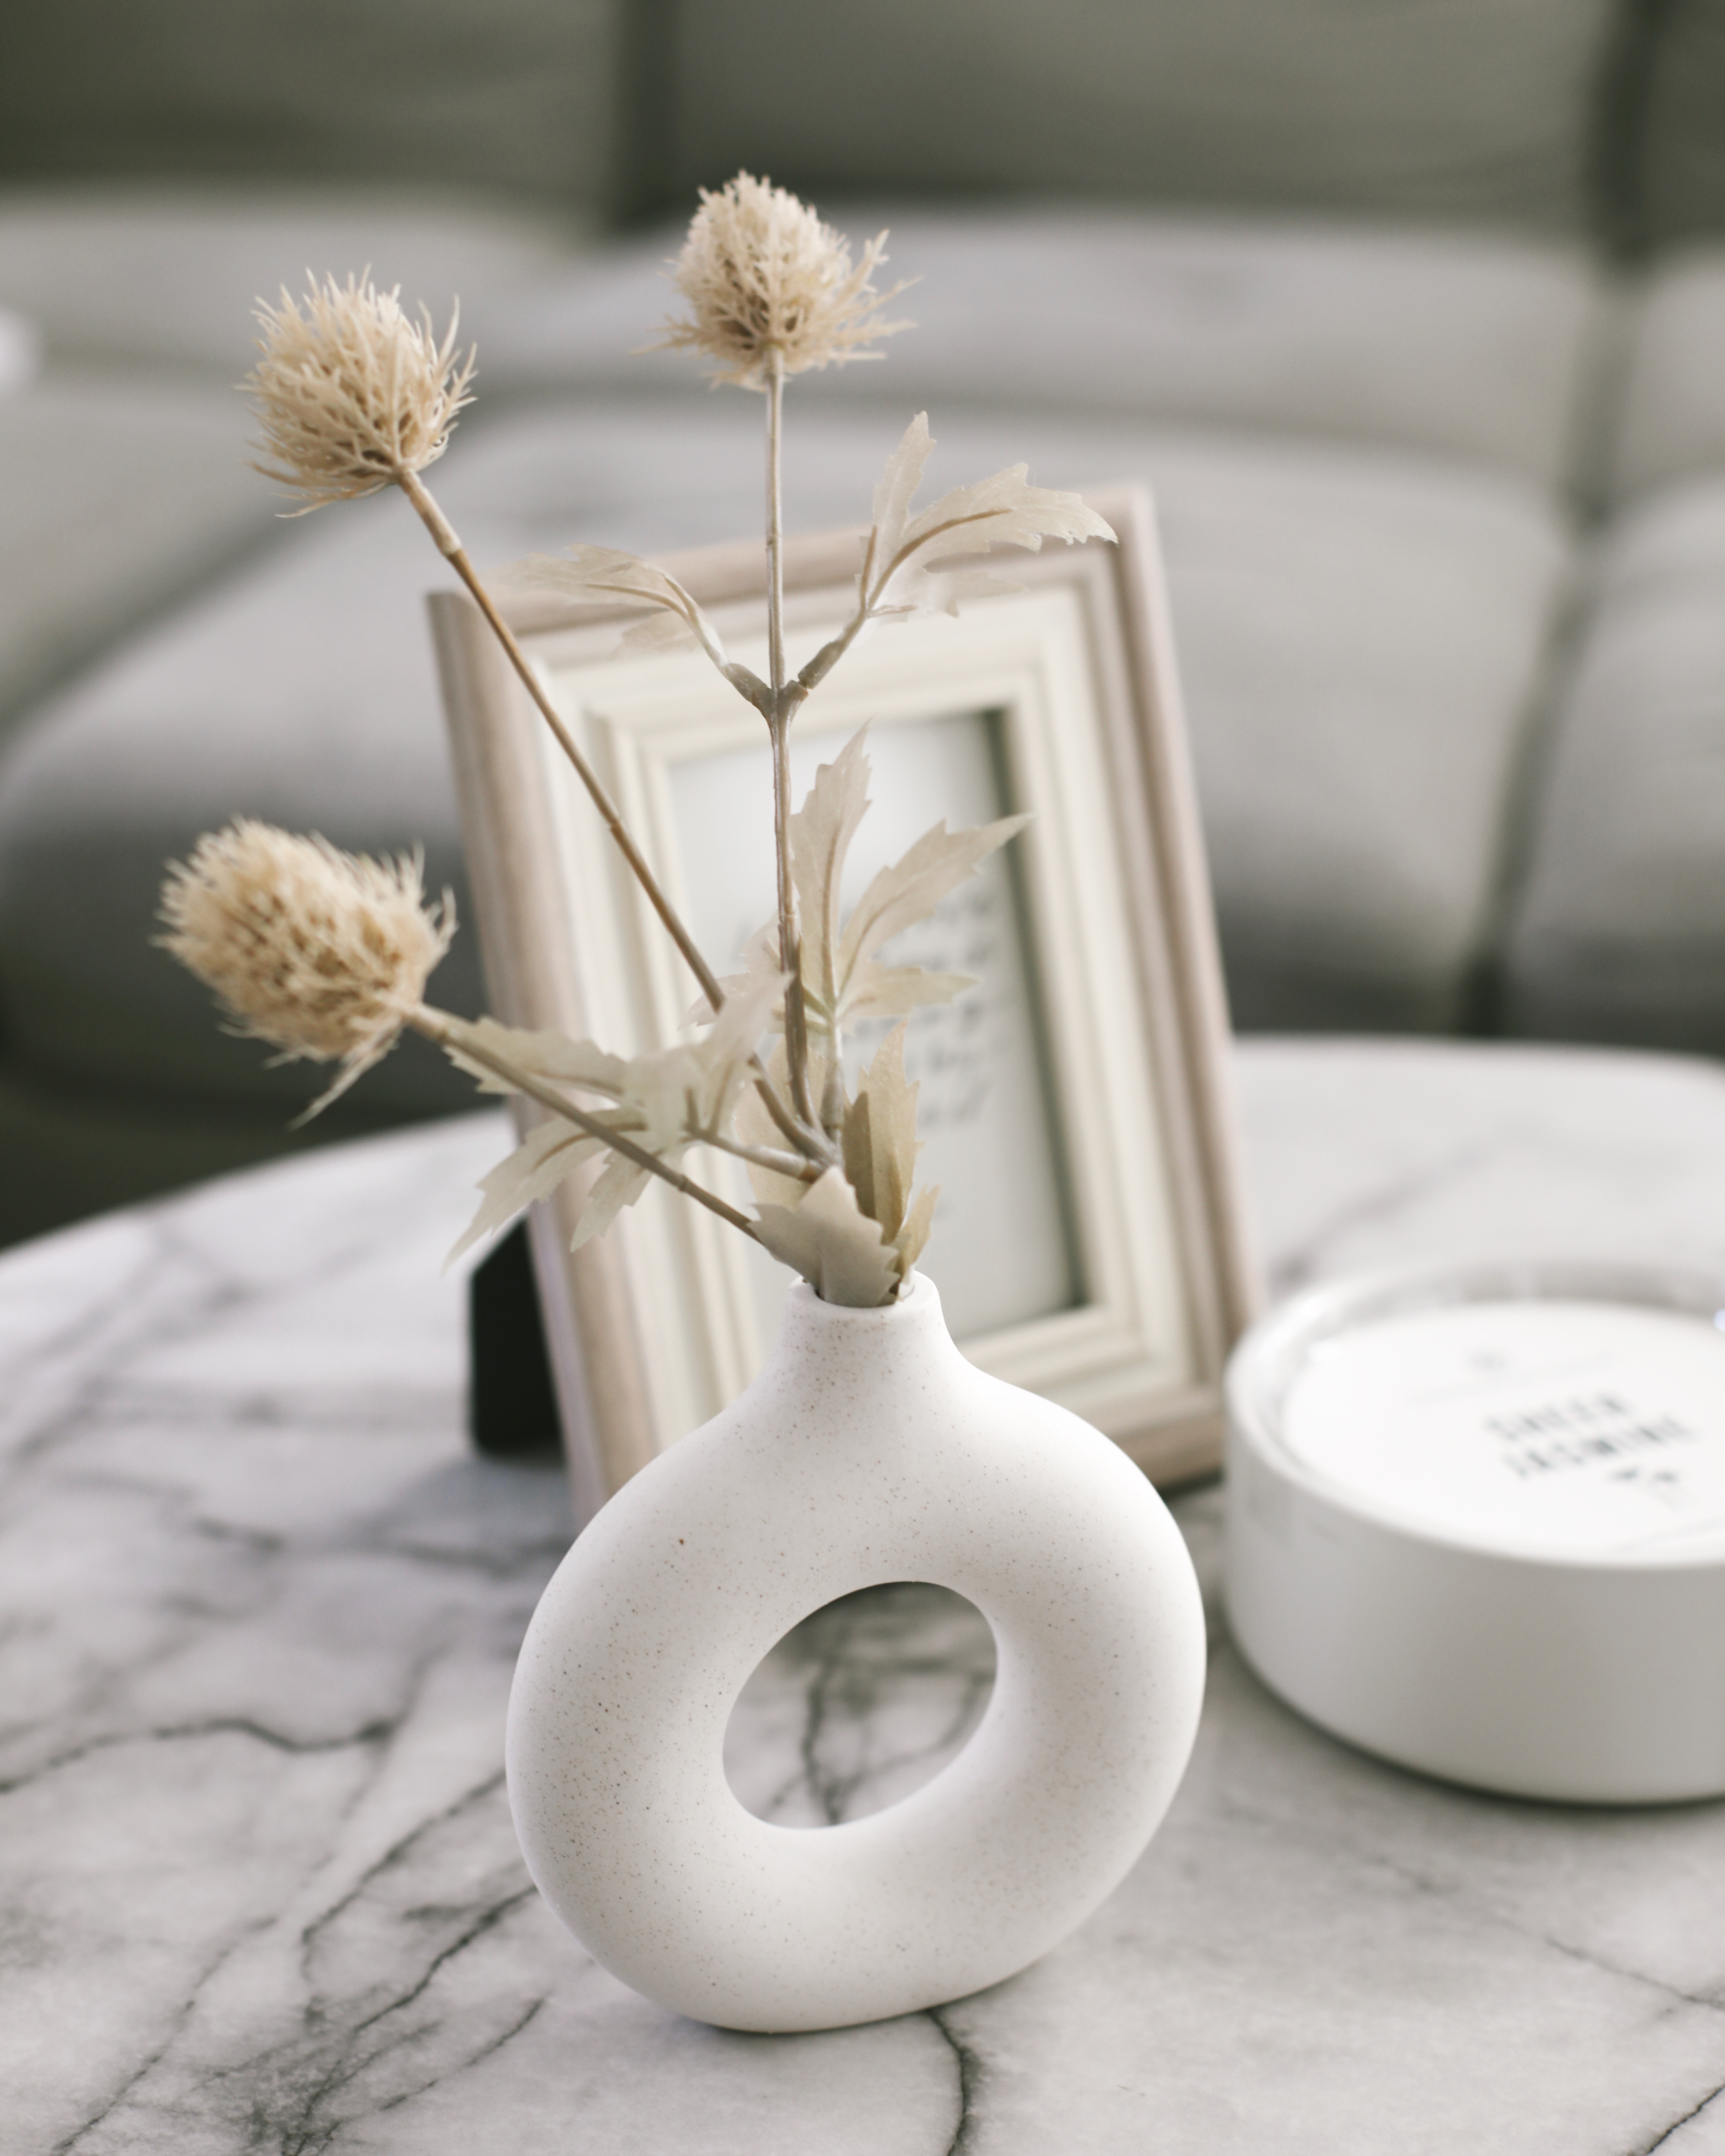 Round Shape Flower Vase Room Decor Ceramic Vase Home Decoration - Affordable by Amanda - Walmart Home Finds for Spring